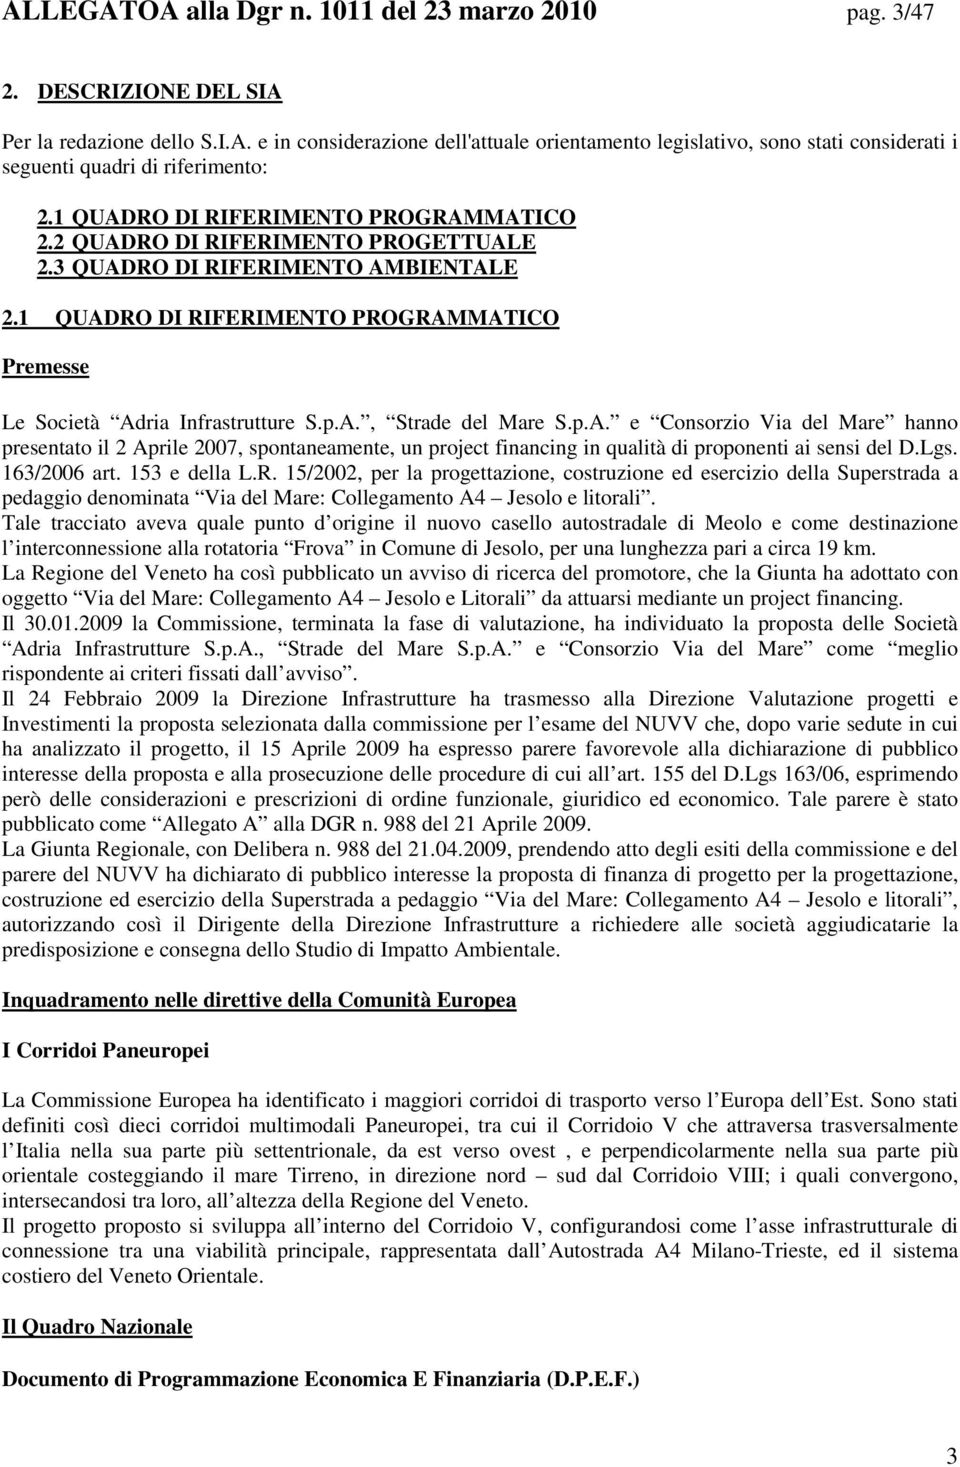 p.A. e Consorzio Via del Mare hanno presentato il 2 Aprile 2007, spontaneamente, un project financing in qualità di proponenti ai sensi del D.Lgs. 163/2006 art. 153 e della L.R.